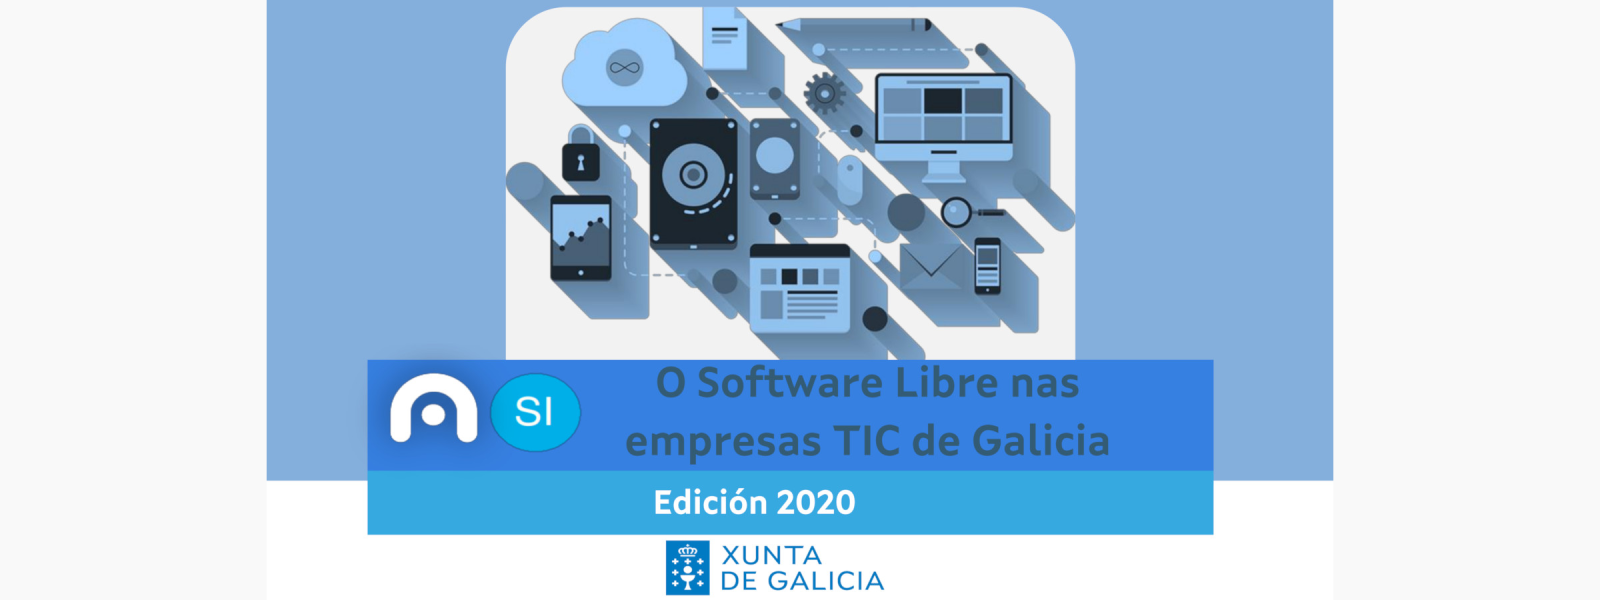 El software libre en las empresas TIC de Galicia, año 2020